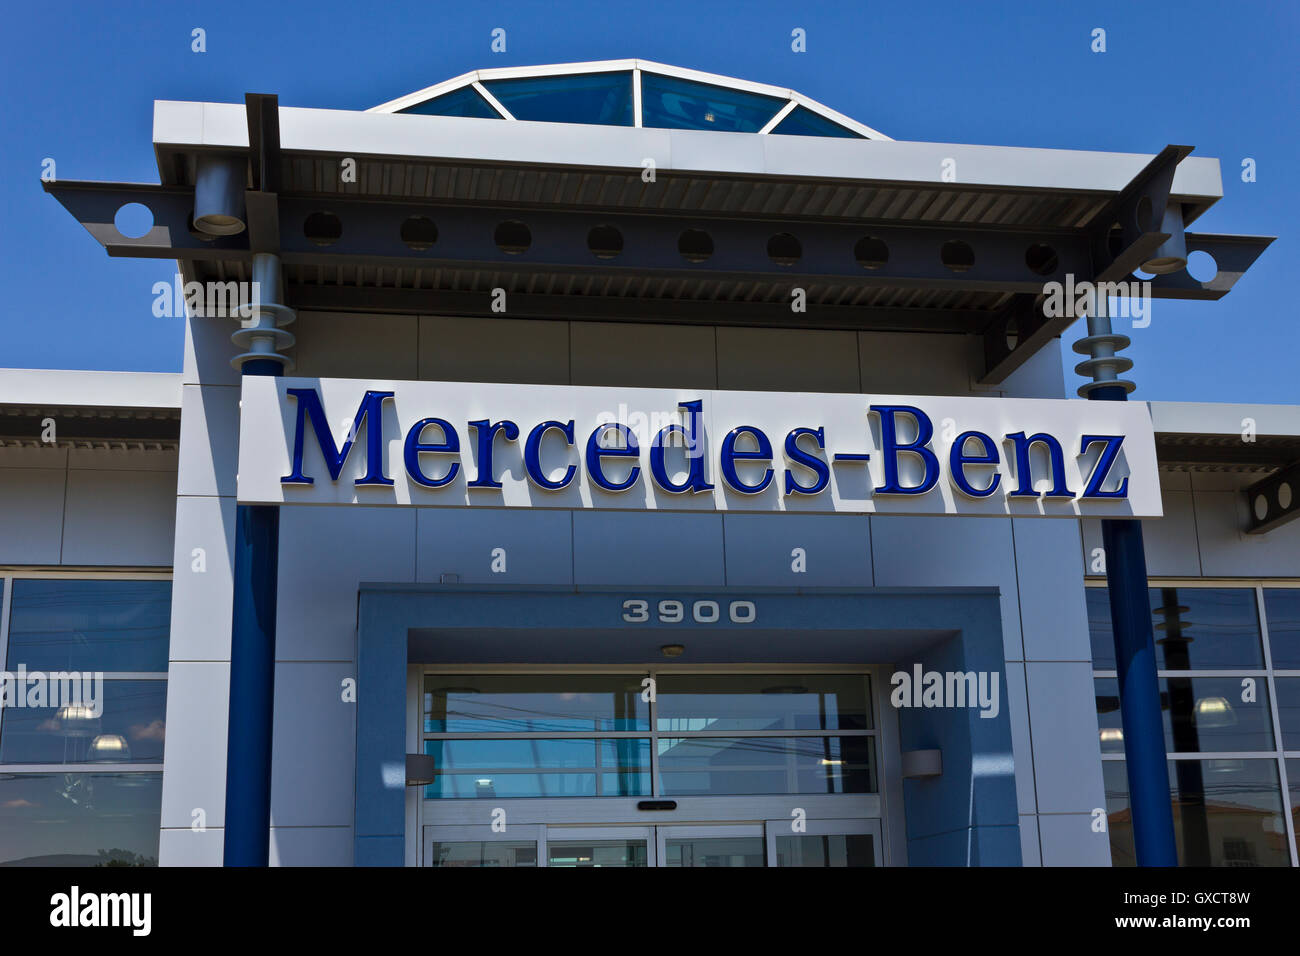 Mercedes benz schlüssel -Fotos und -Bildmaterial in hoher Auflösung – Alamy